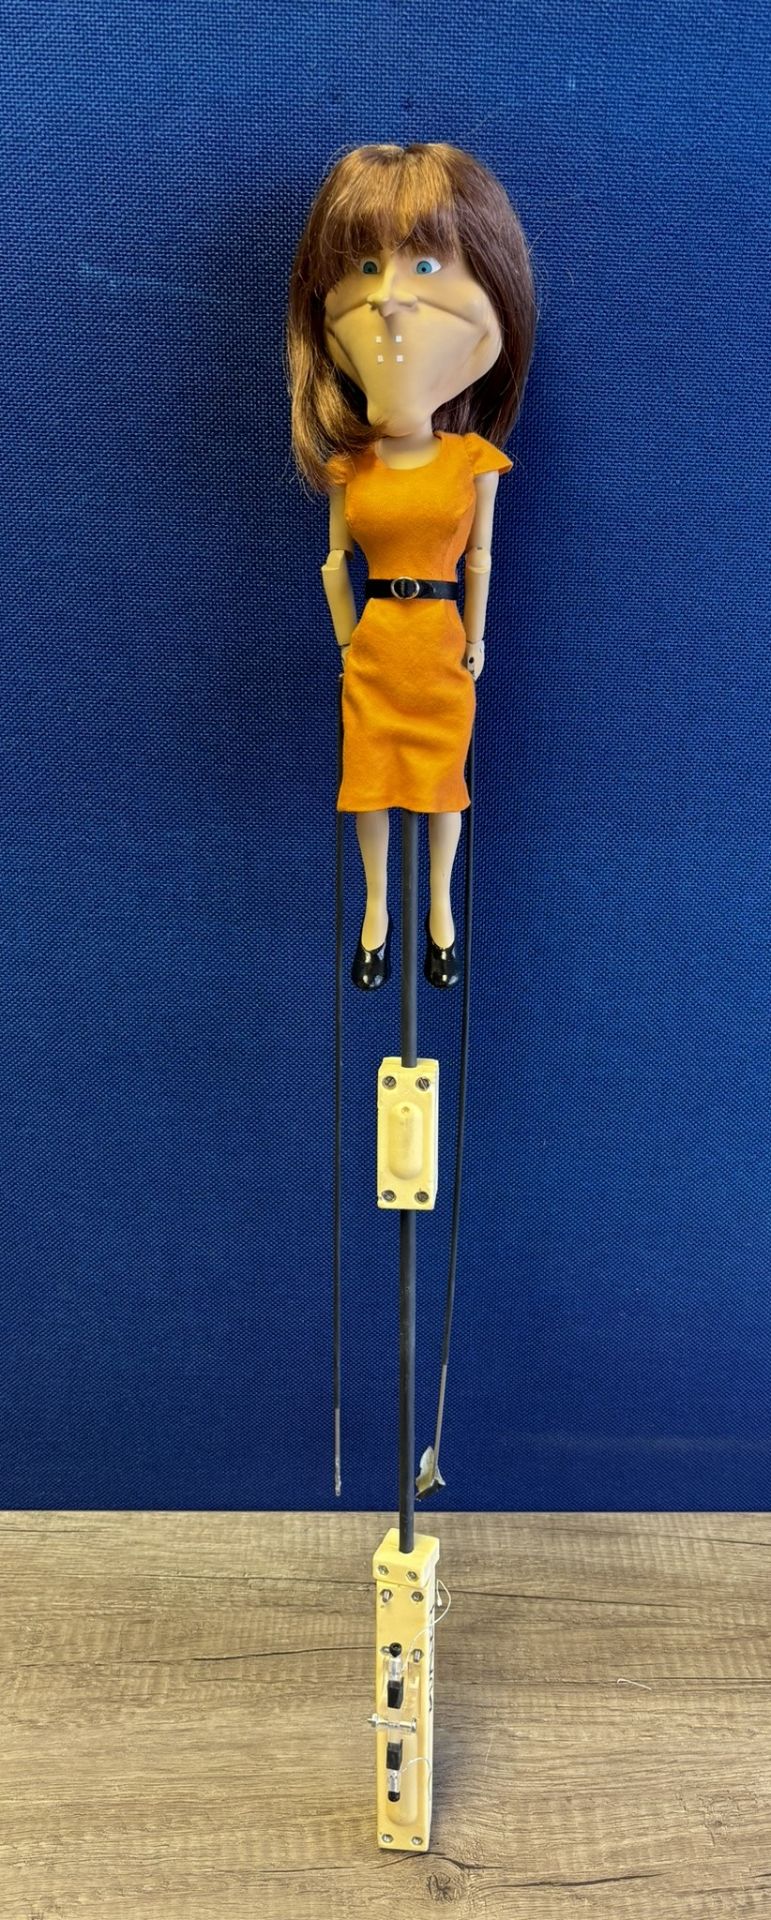 Newzoid puppet - Kay Burley - Bild 3 aus 3